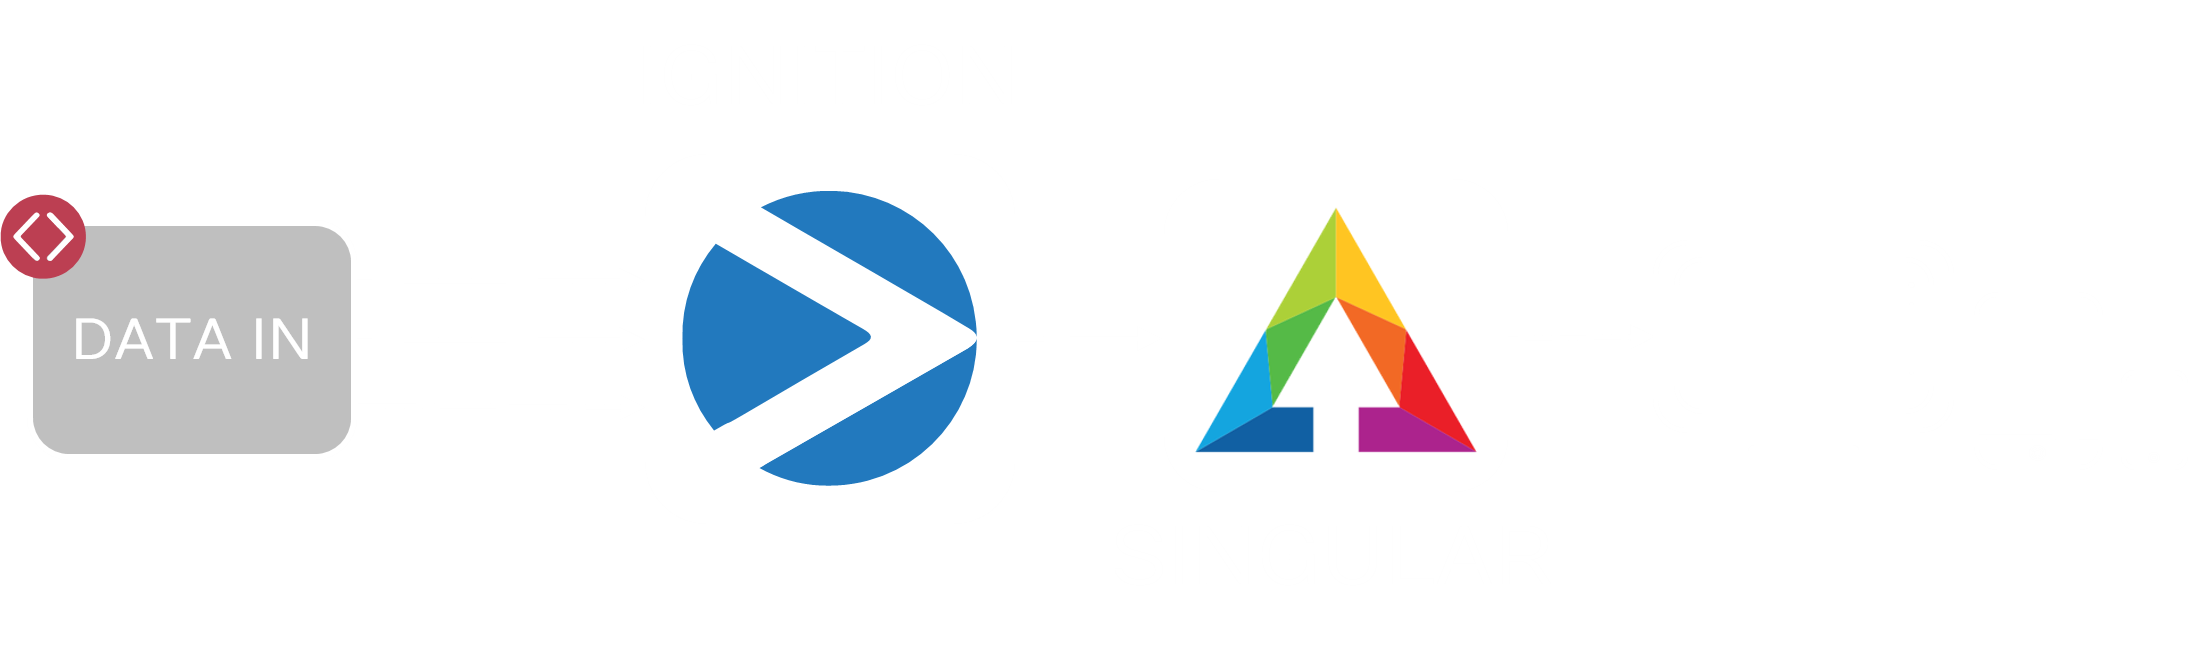 singular-flow.png